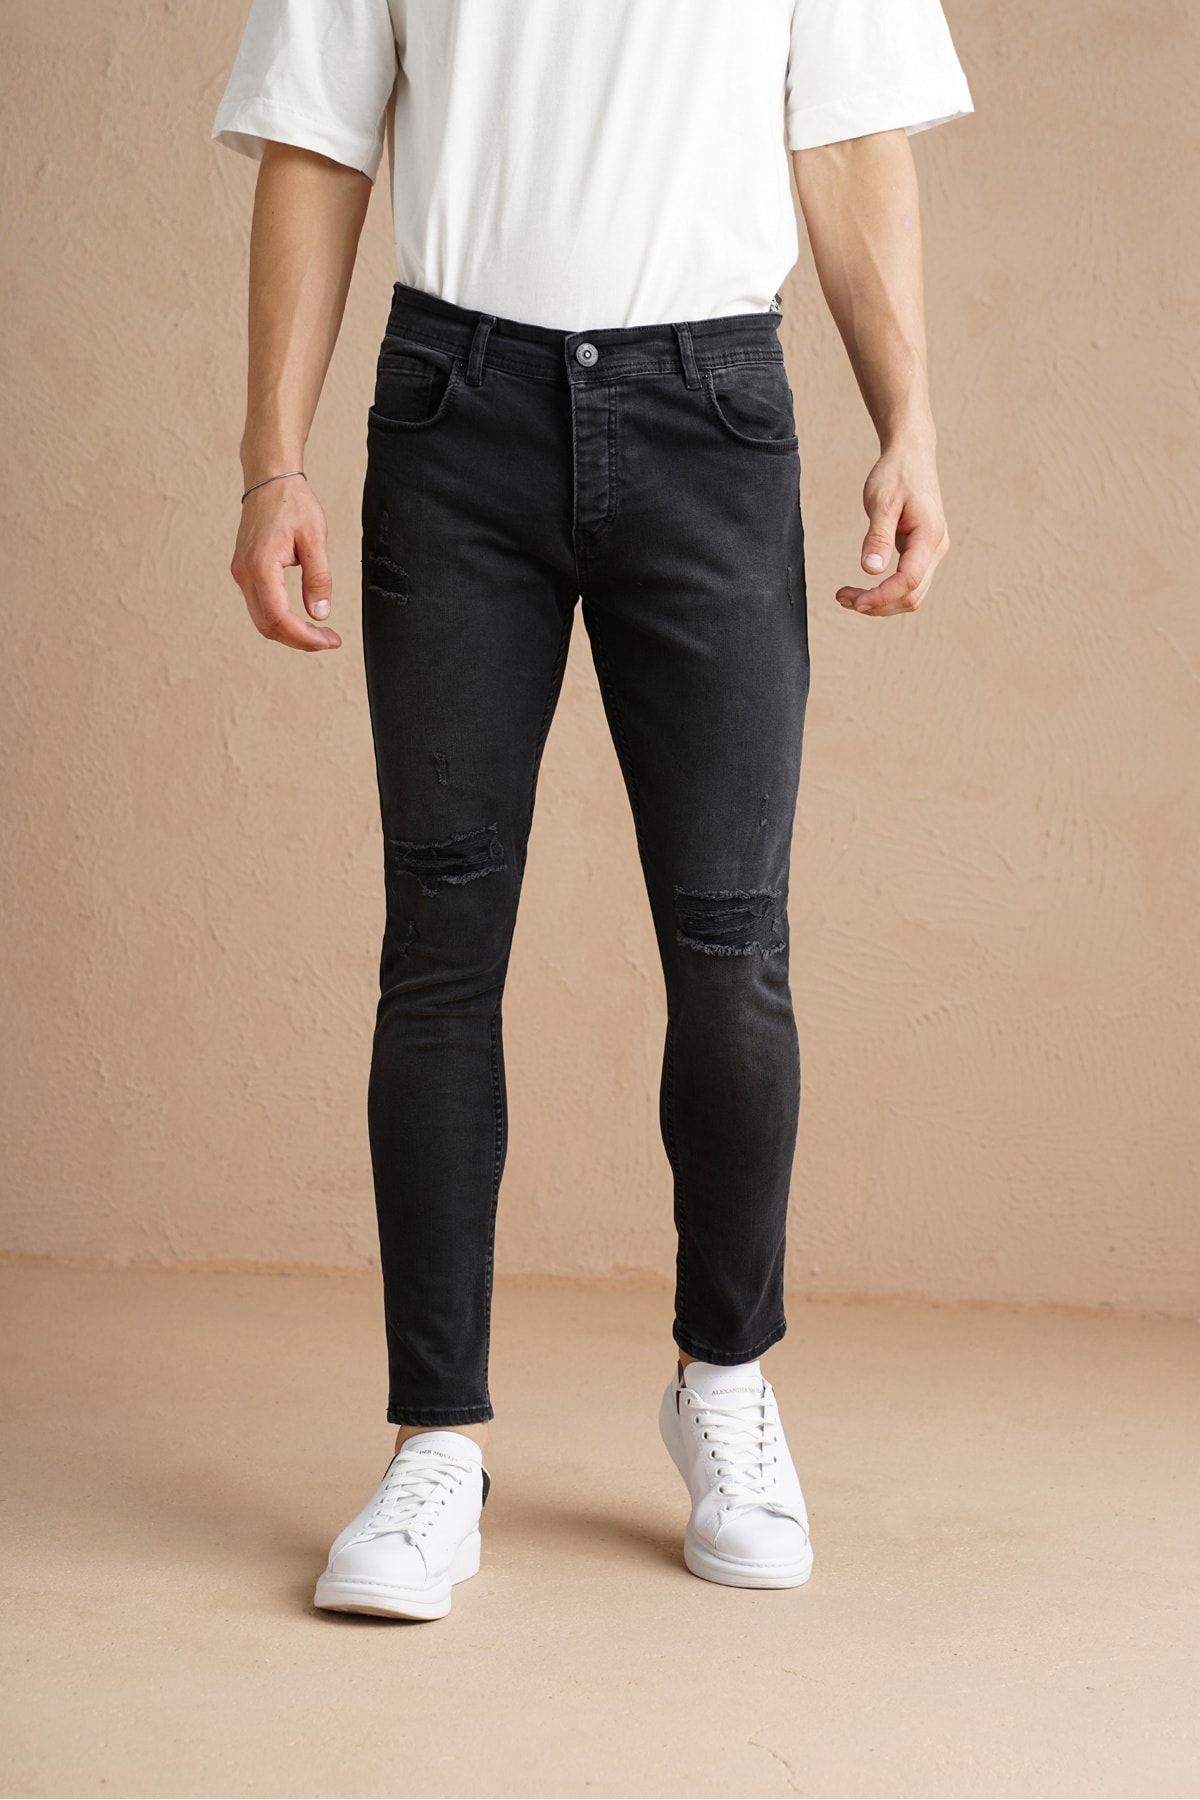 Tarz Cool Erkek Füme Diz Yırtıklı Yamalı Skinny Fit Jean Pantolon